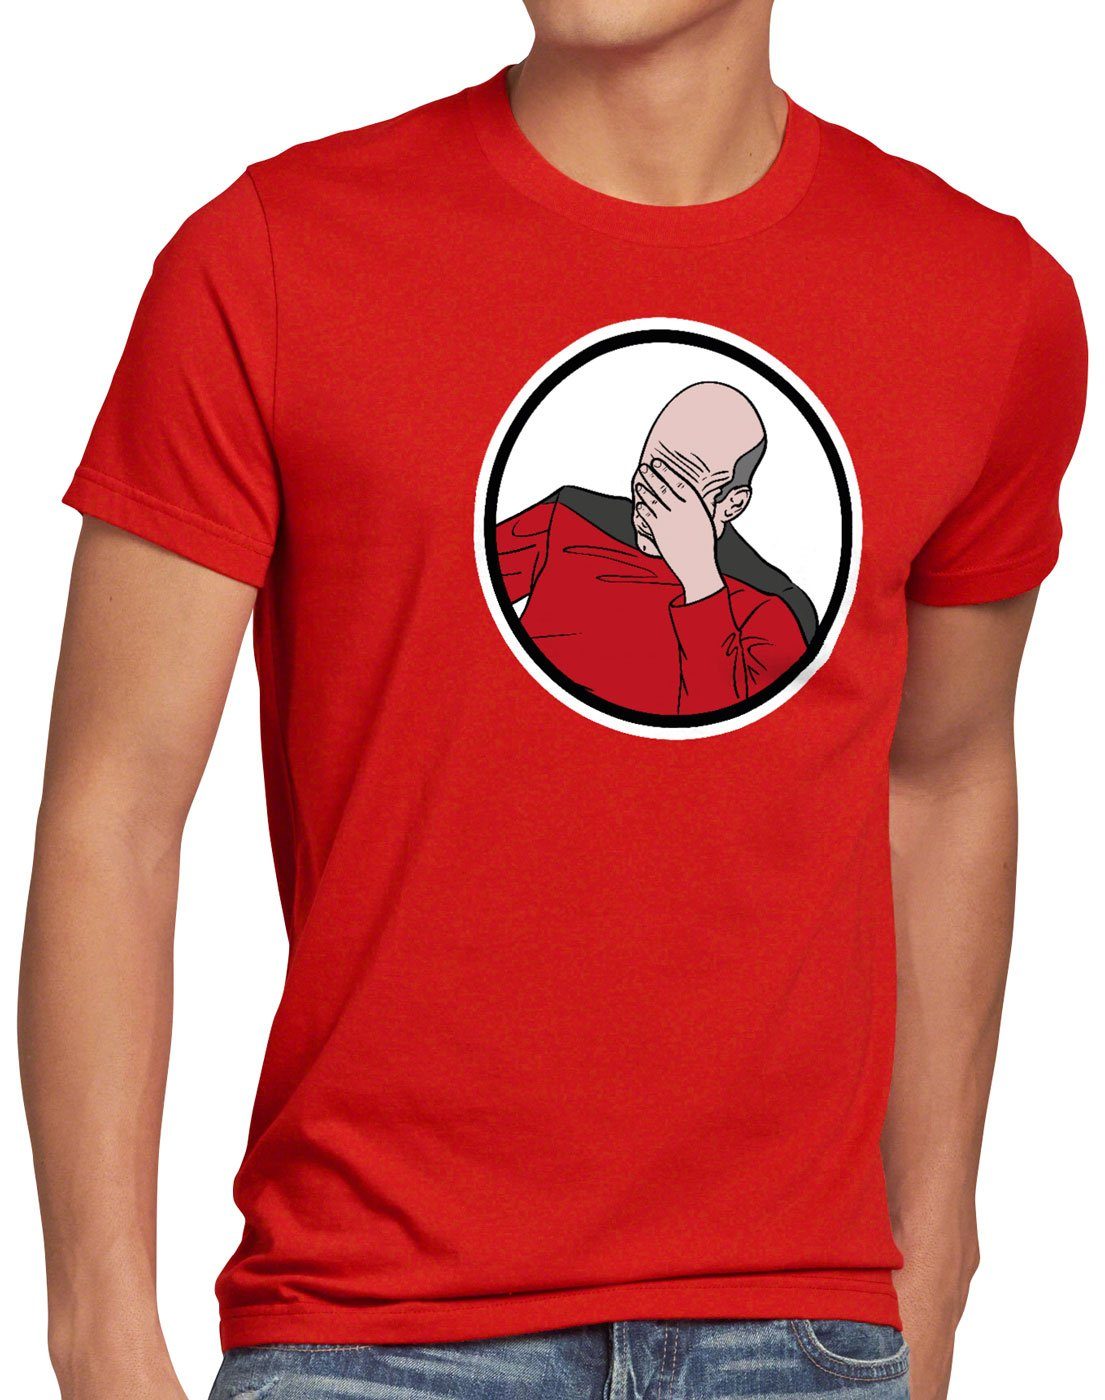 Print-Shirt meme T-Shirt Facepalm scham Picard style3 rot internet Herren